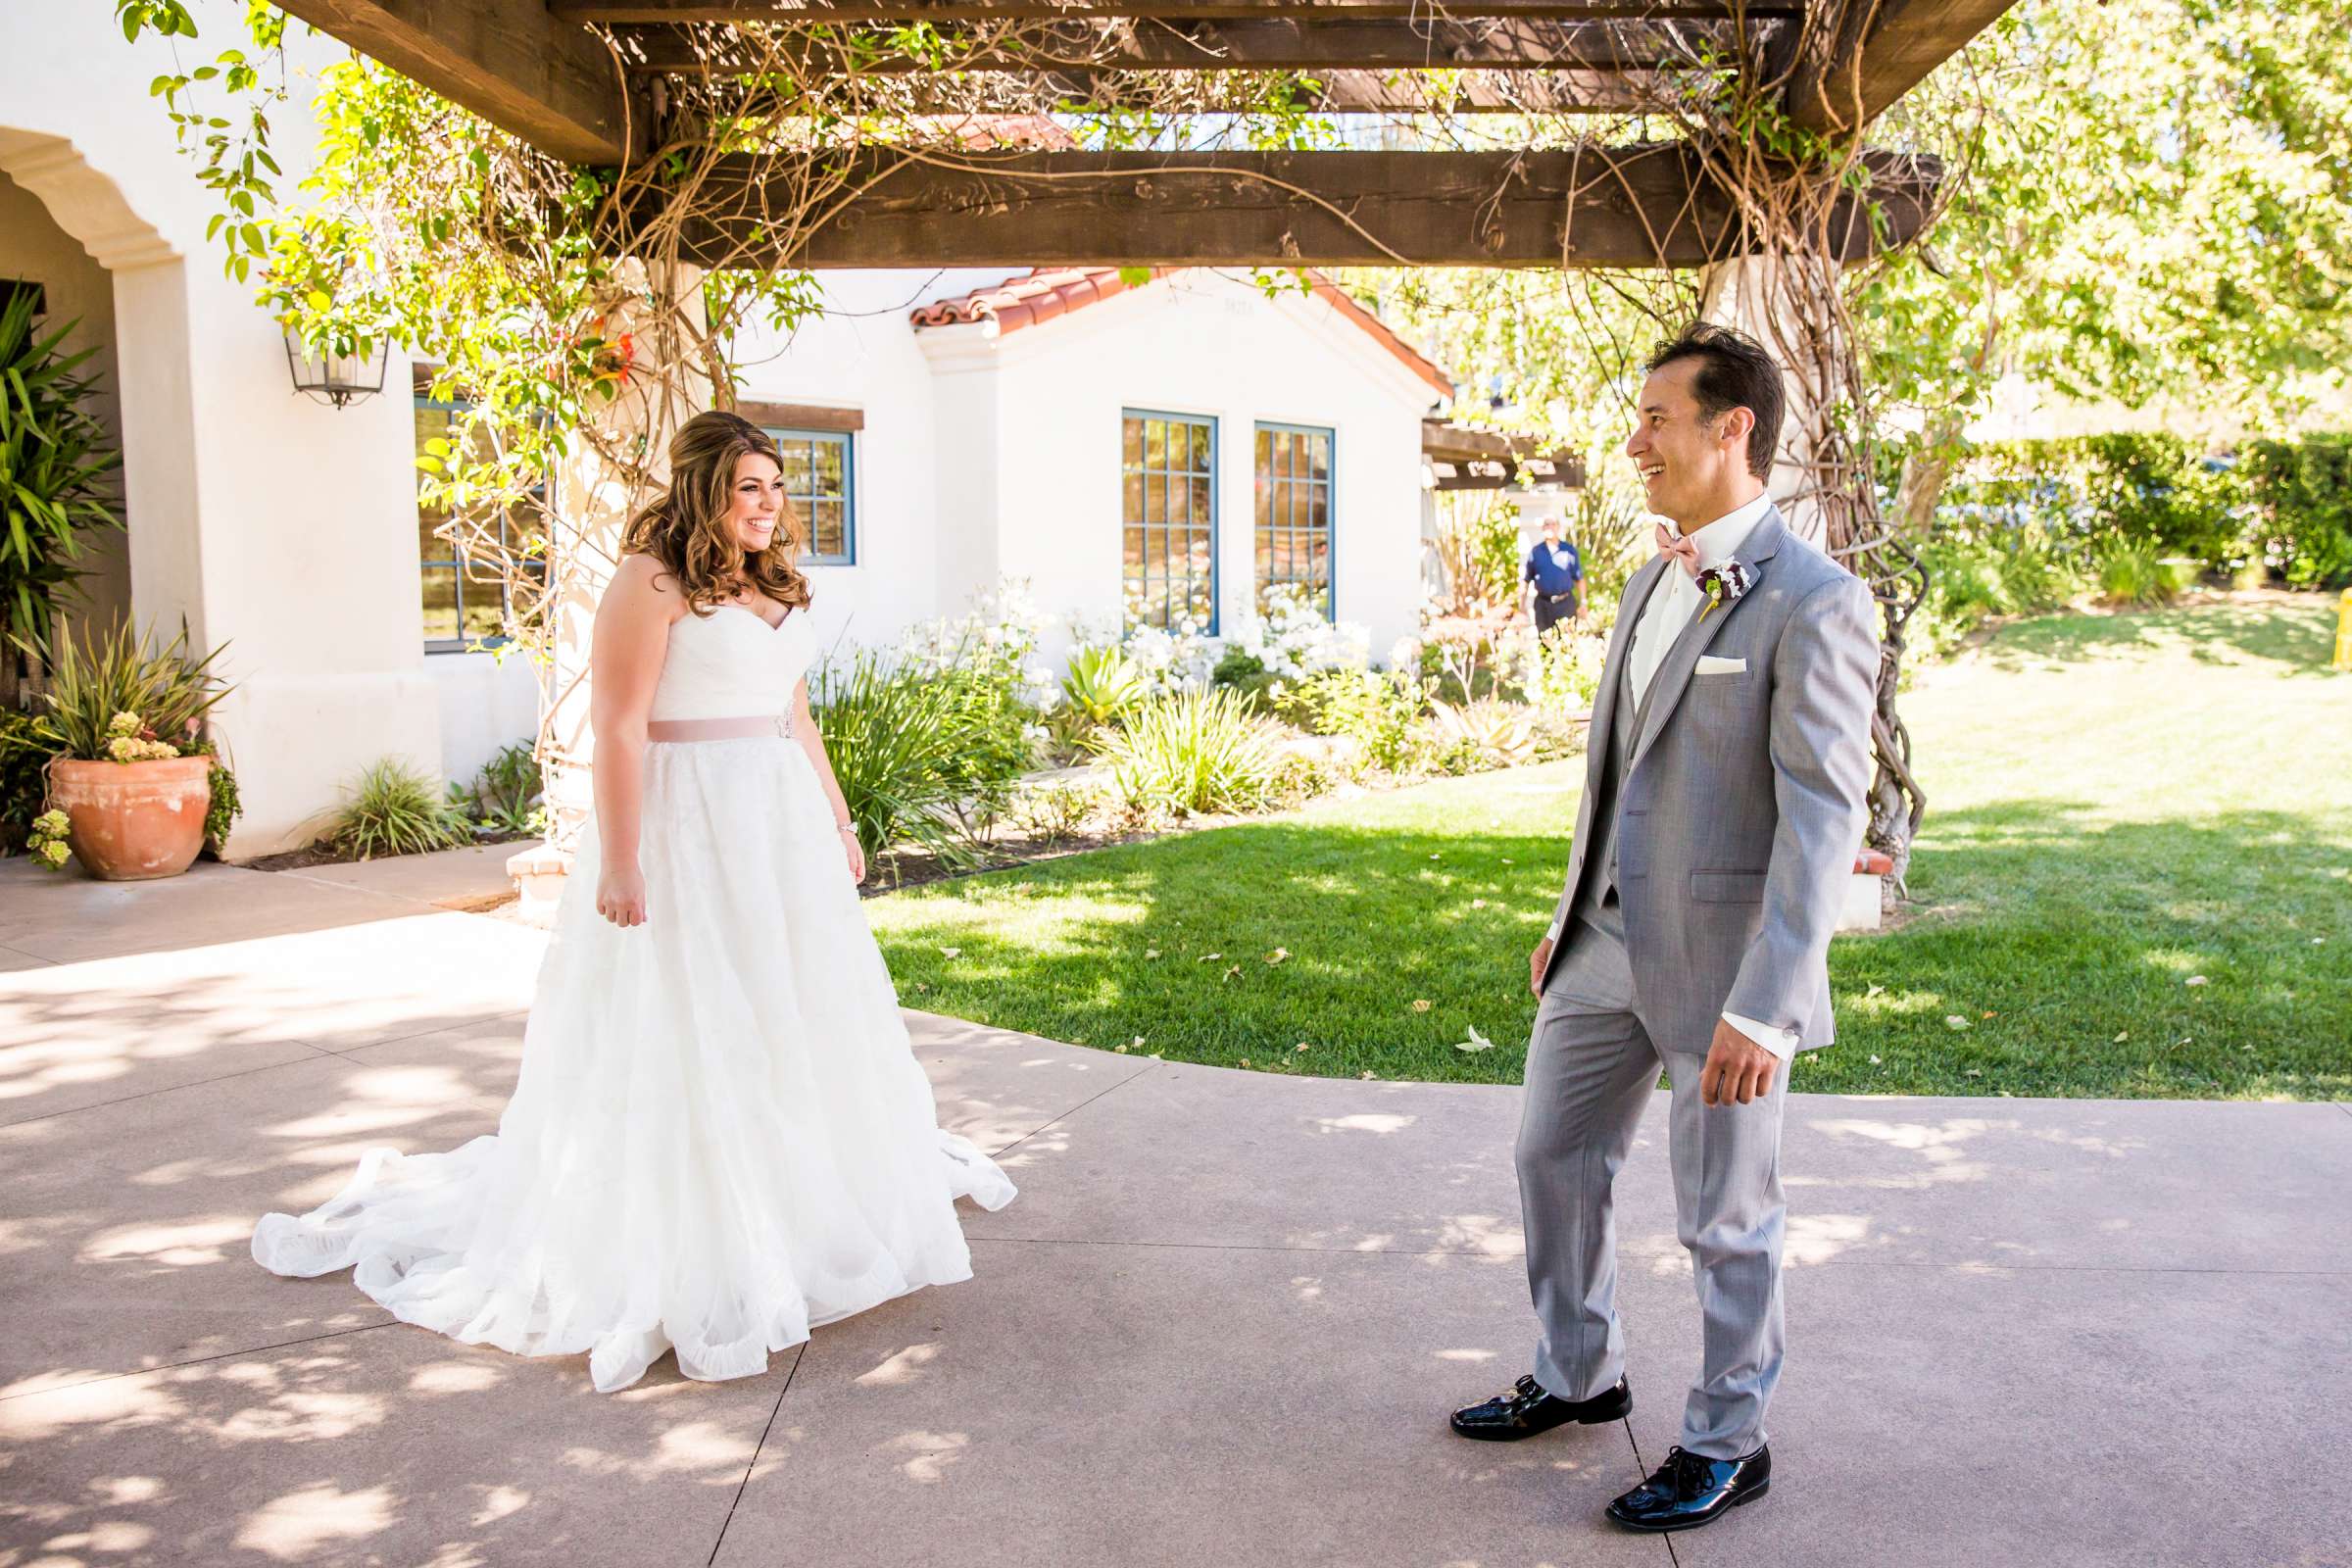 Rancho Santa Fe Golf Club Wedding coordinated by Monarch Weddings, Carolynn and Jon Wedding Photo #5 by True Photography